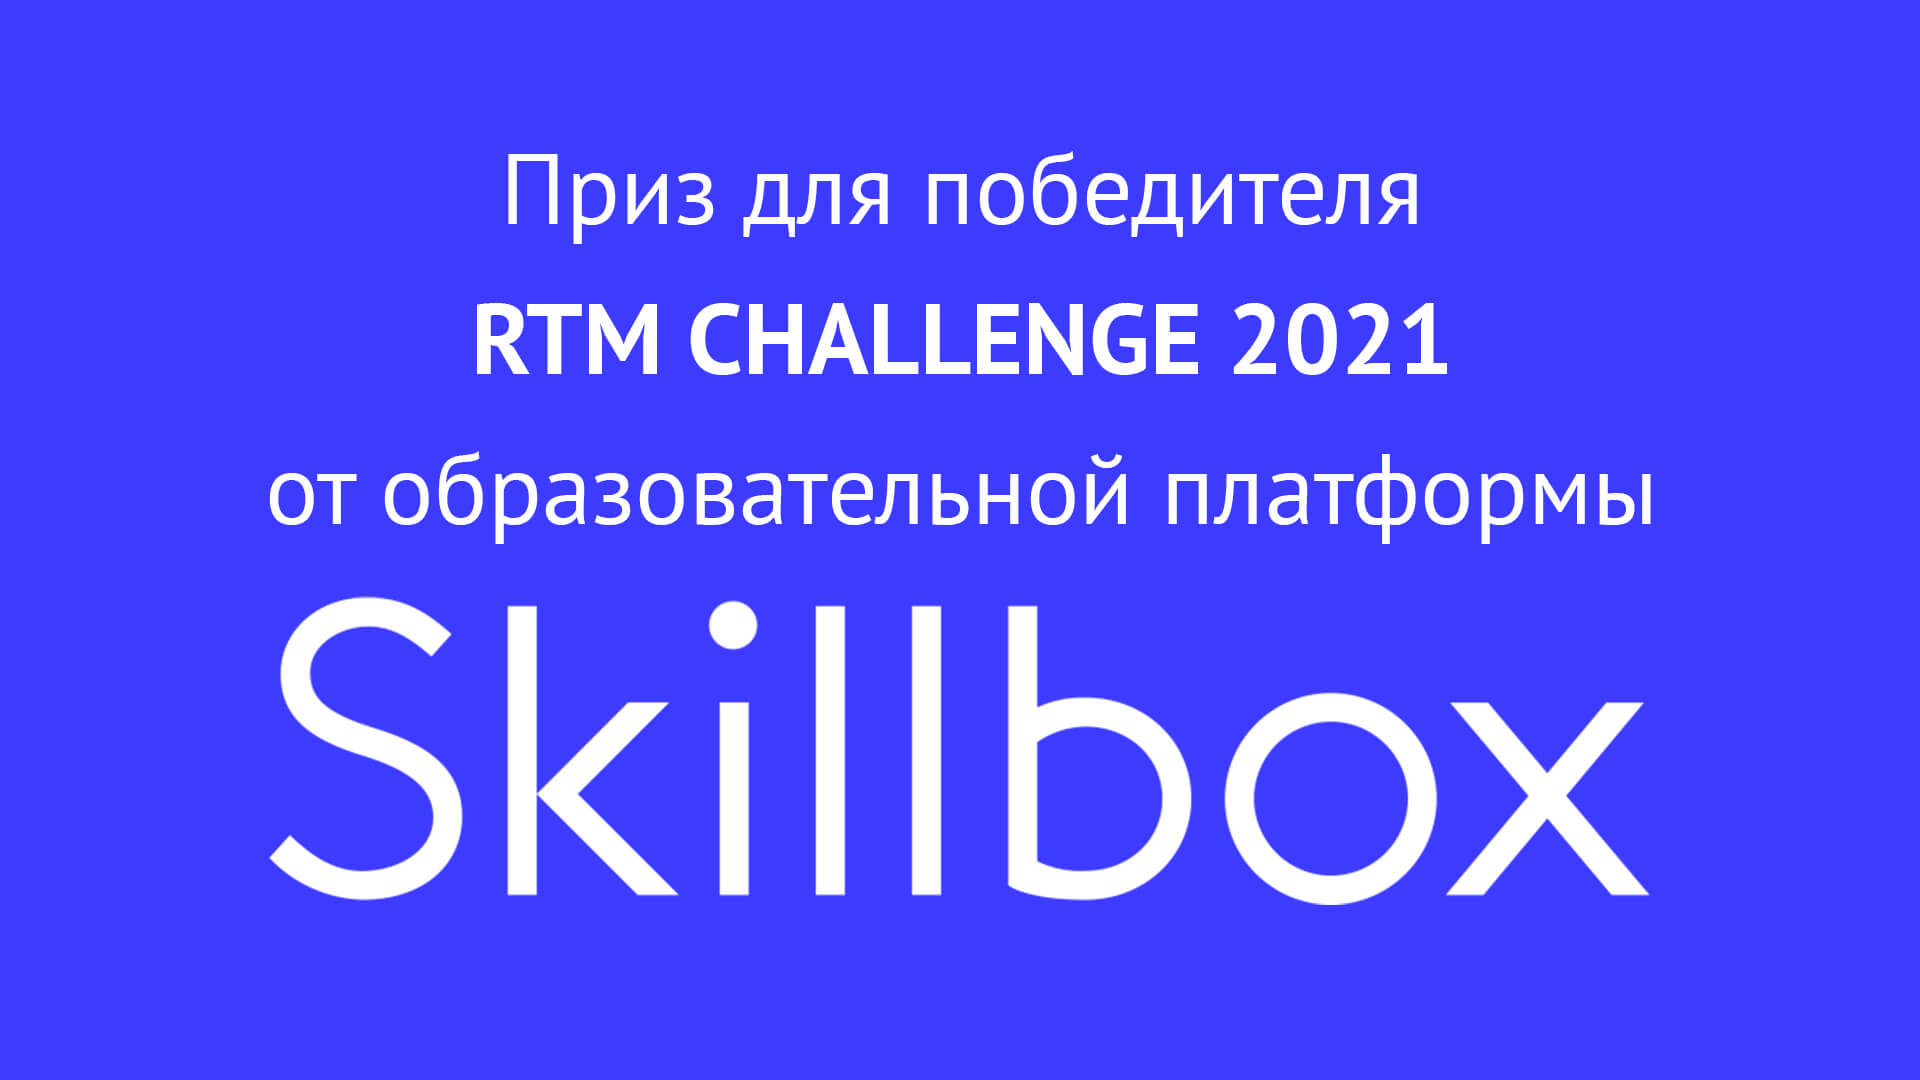 Приз от образовательной платформы Skillbox для победителя студенческой олимпиады RTM CHALLENGE 2021